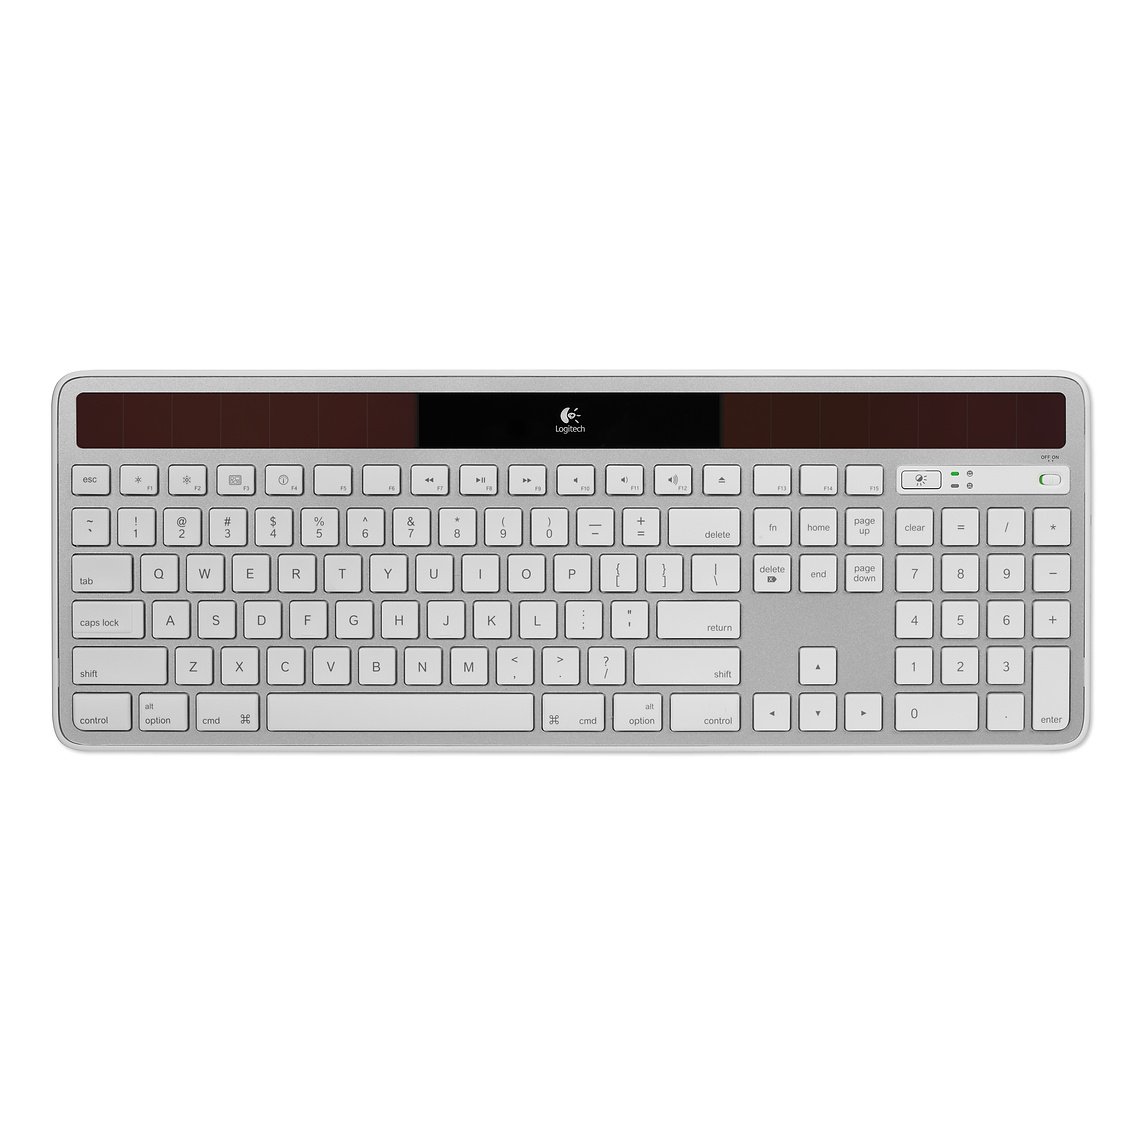 Hylde komponent input Logitech Wireless Solar Keyboard K750 | Dynemac